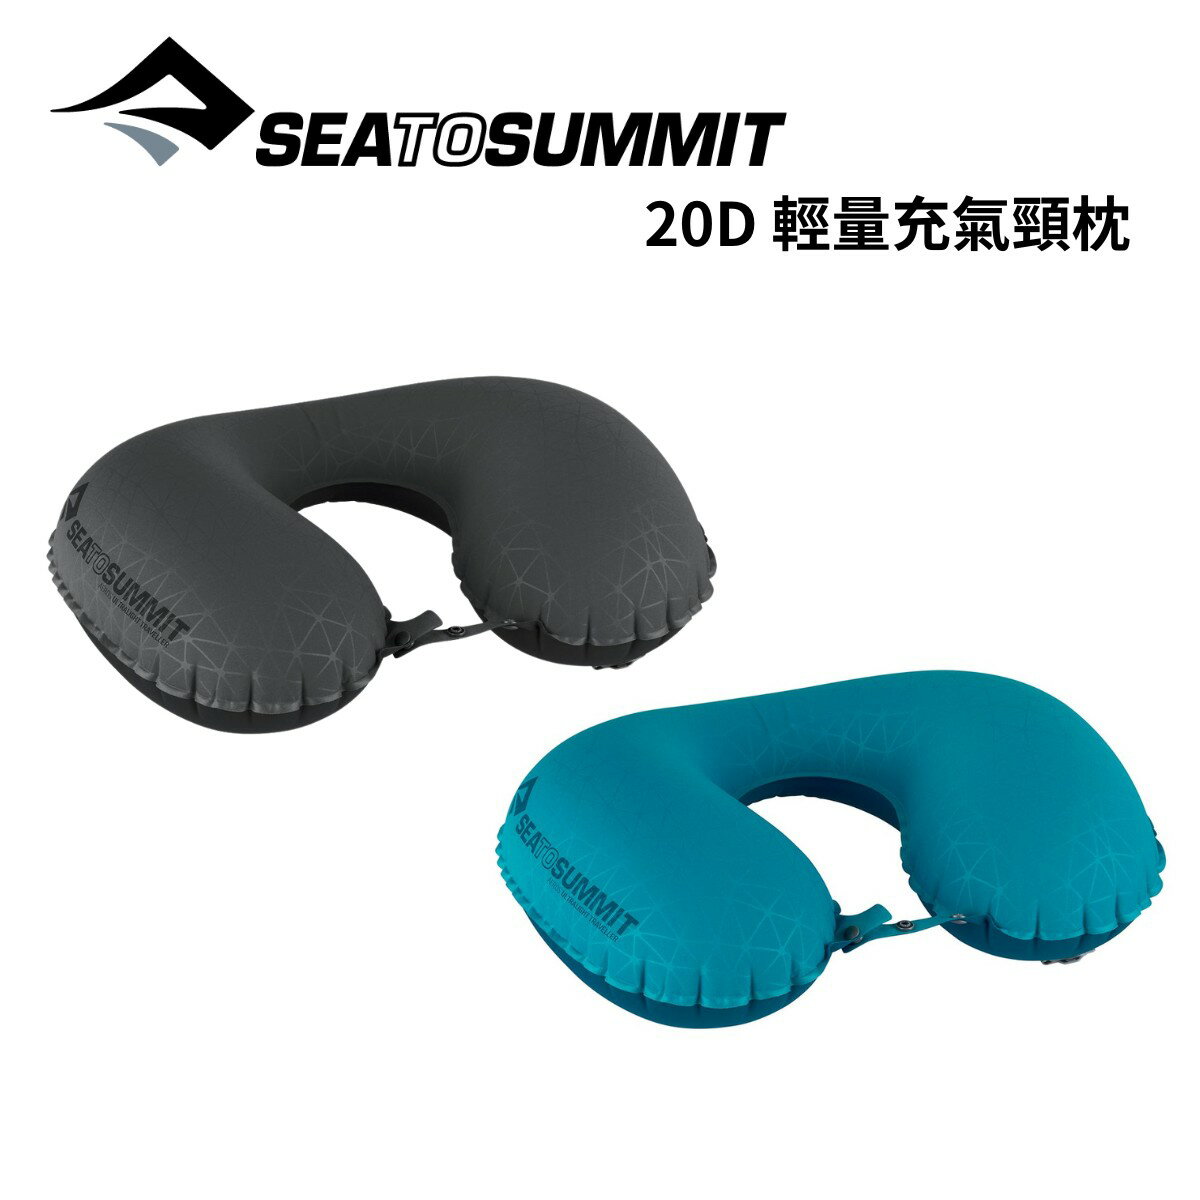 【Sea to Summit】20D 輕量充氣頸枕 Aeros Ultralight Traveller Pillow